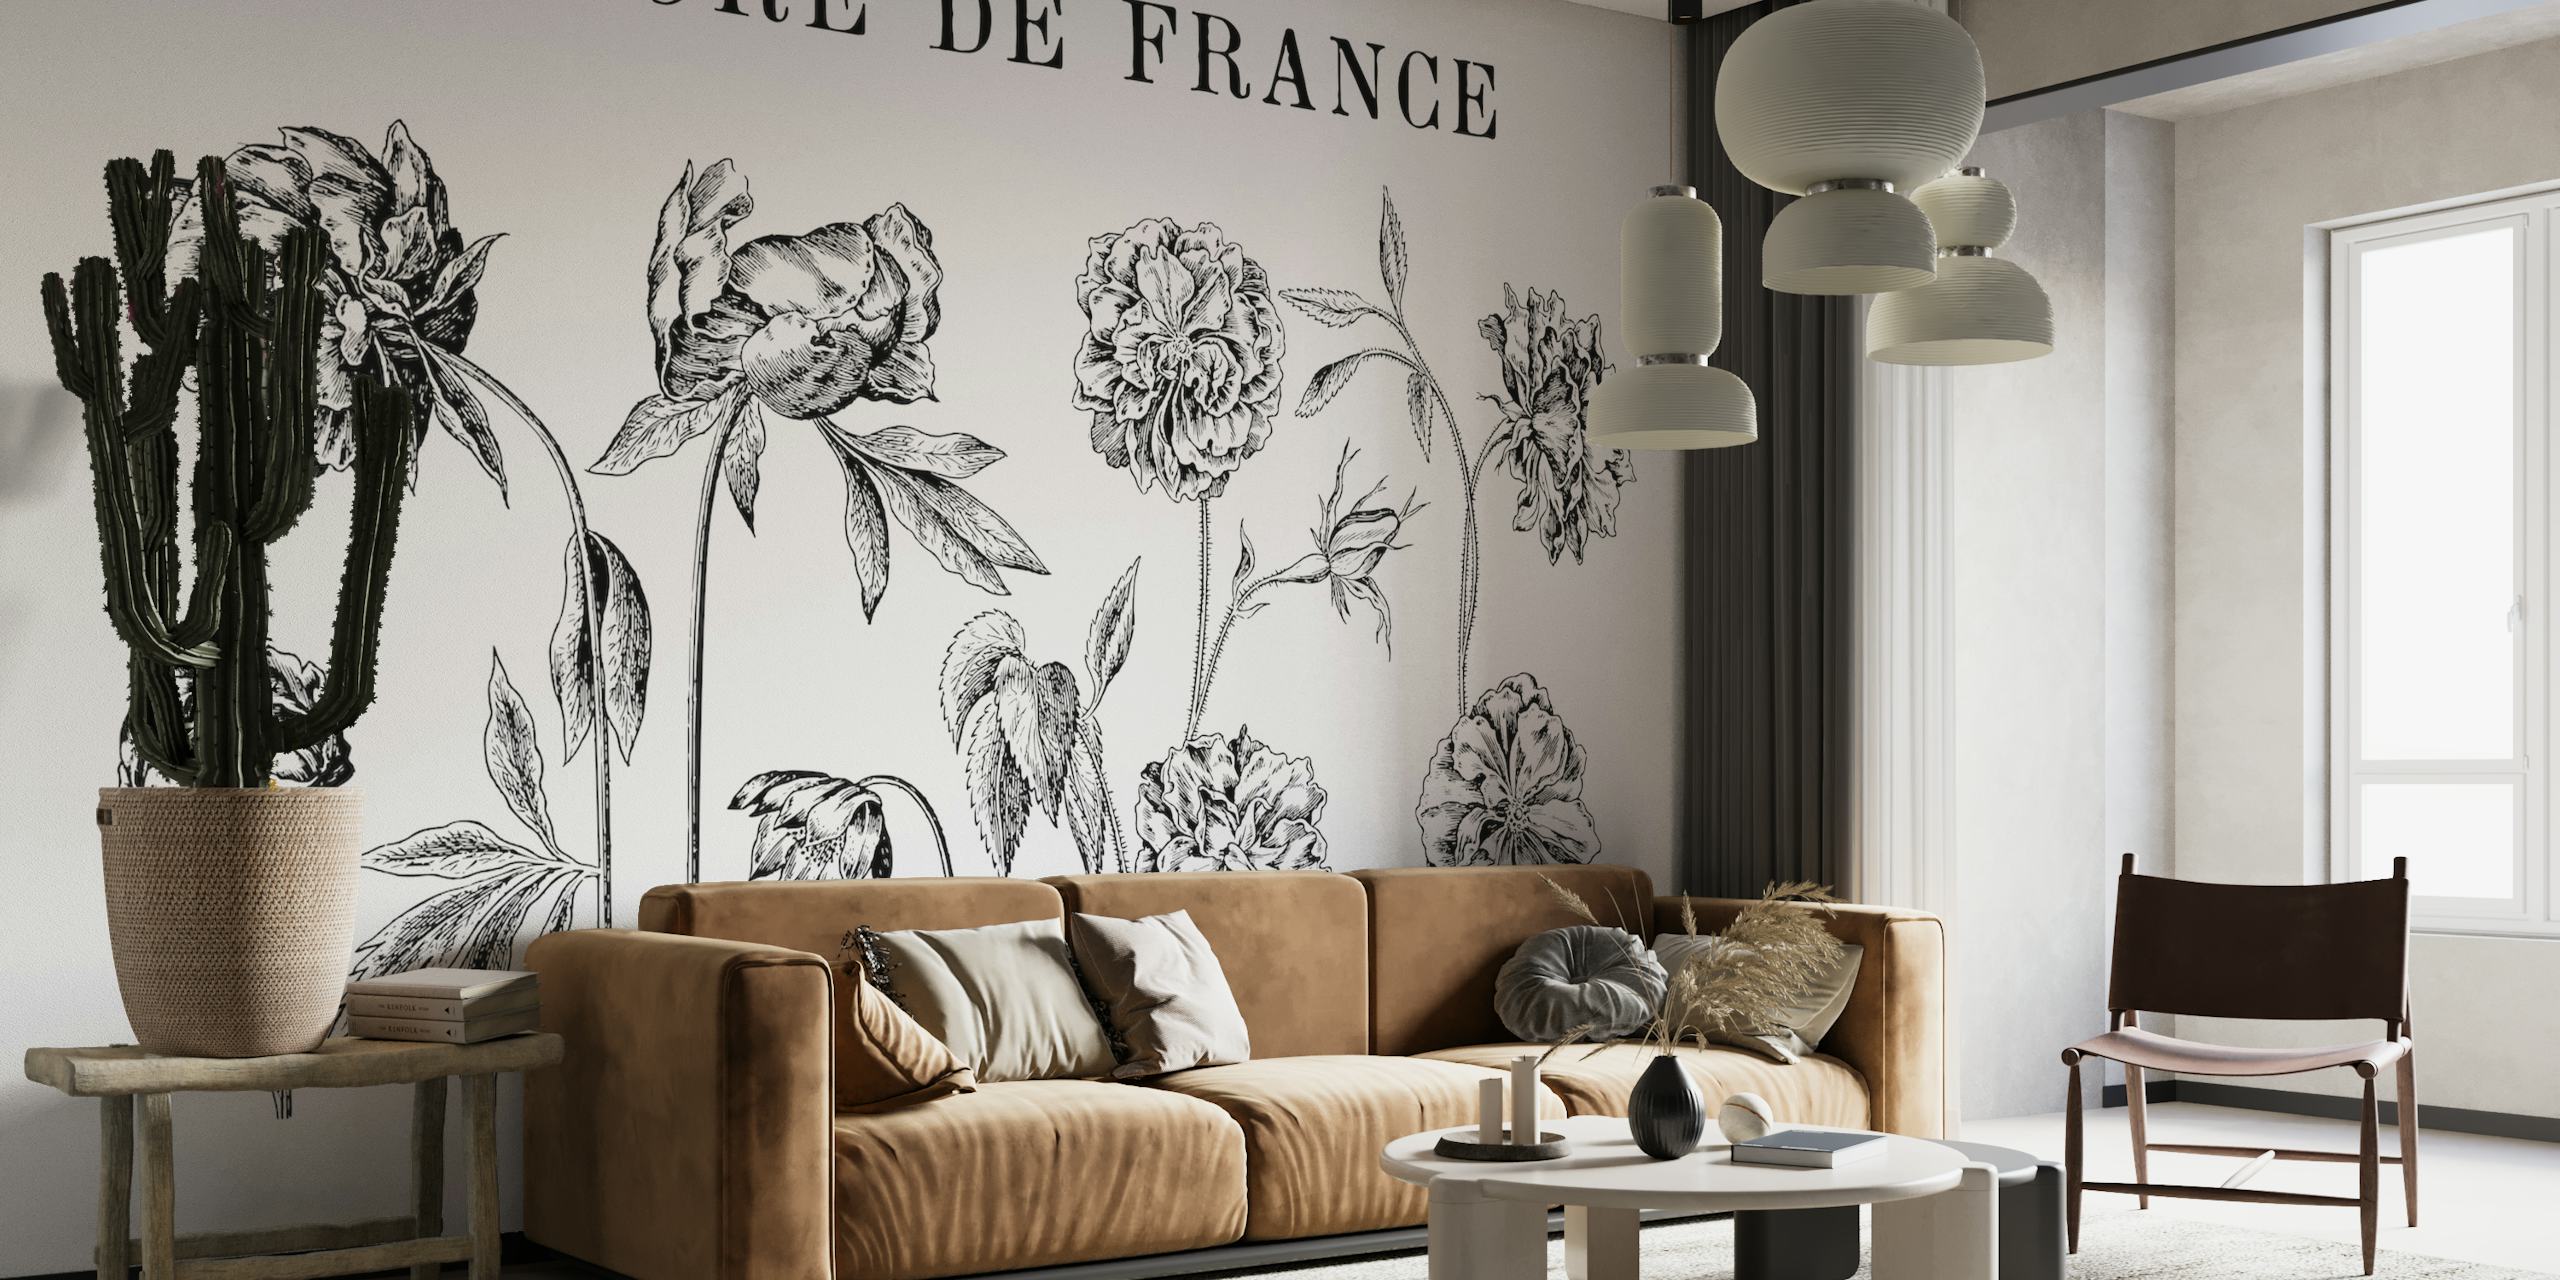 Sort-hvide botaniske tegninger vægmaleri, der viser detaljeret historisk blomsterkunstværk med titlen 'FLORE DE FRANCE'